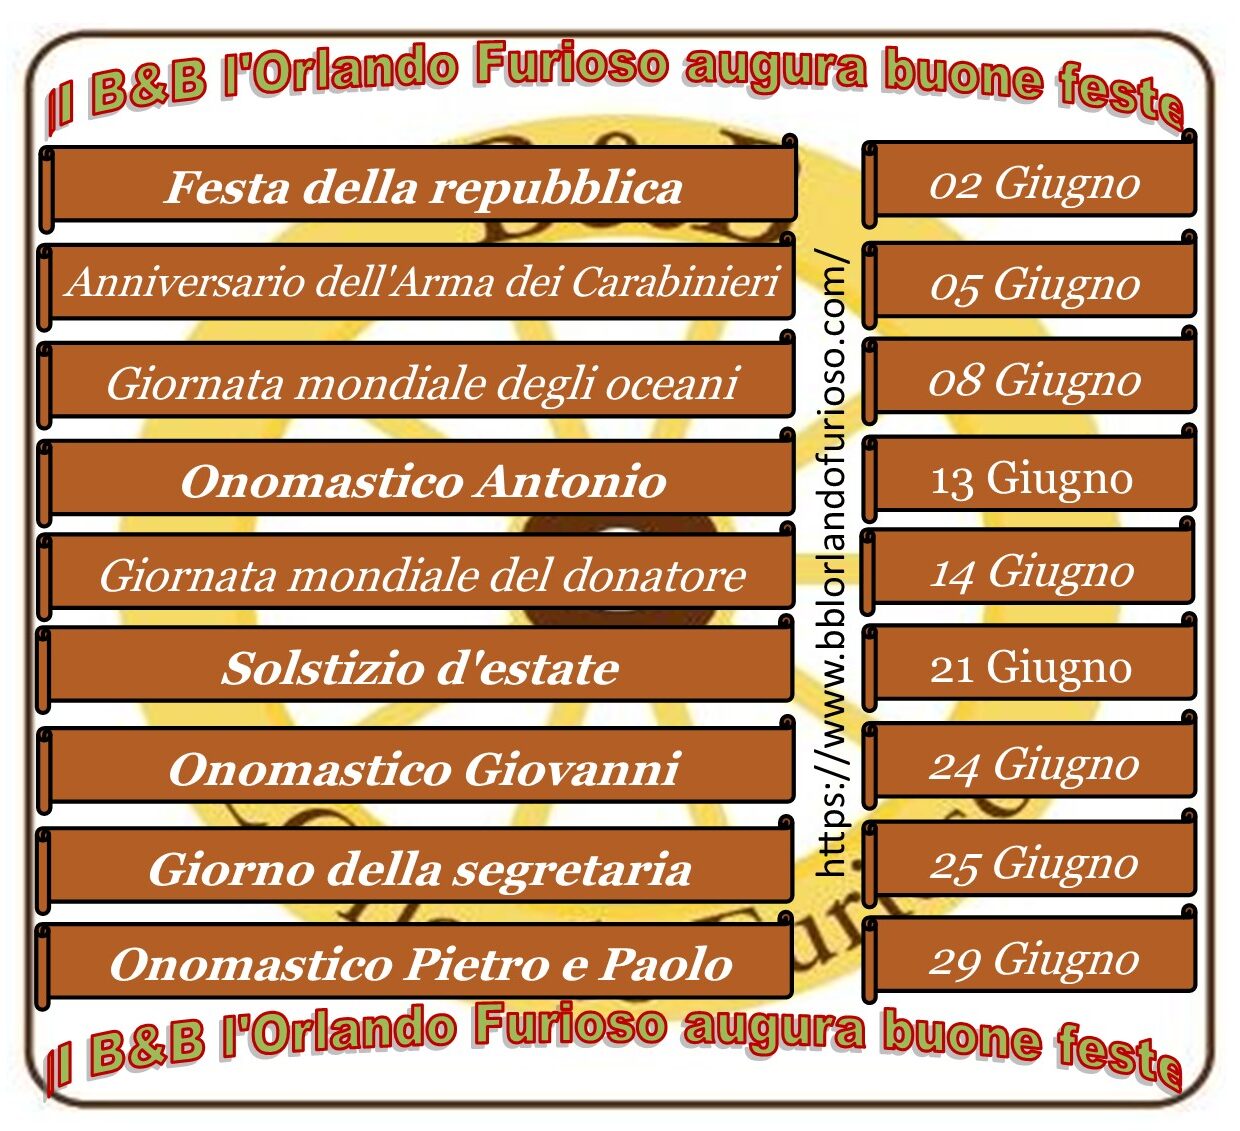 Il BB Orlando Furioso Palermo Centro augura buone feste giugno